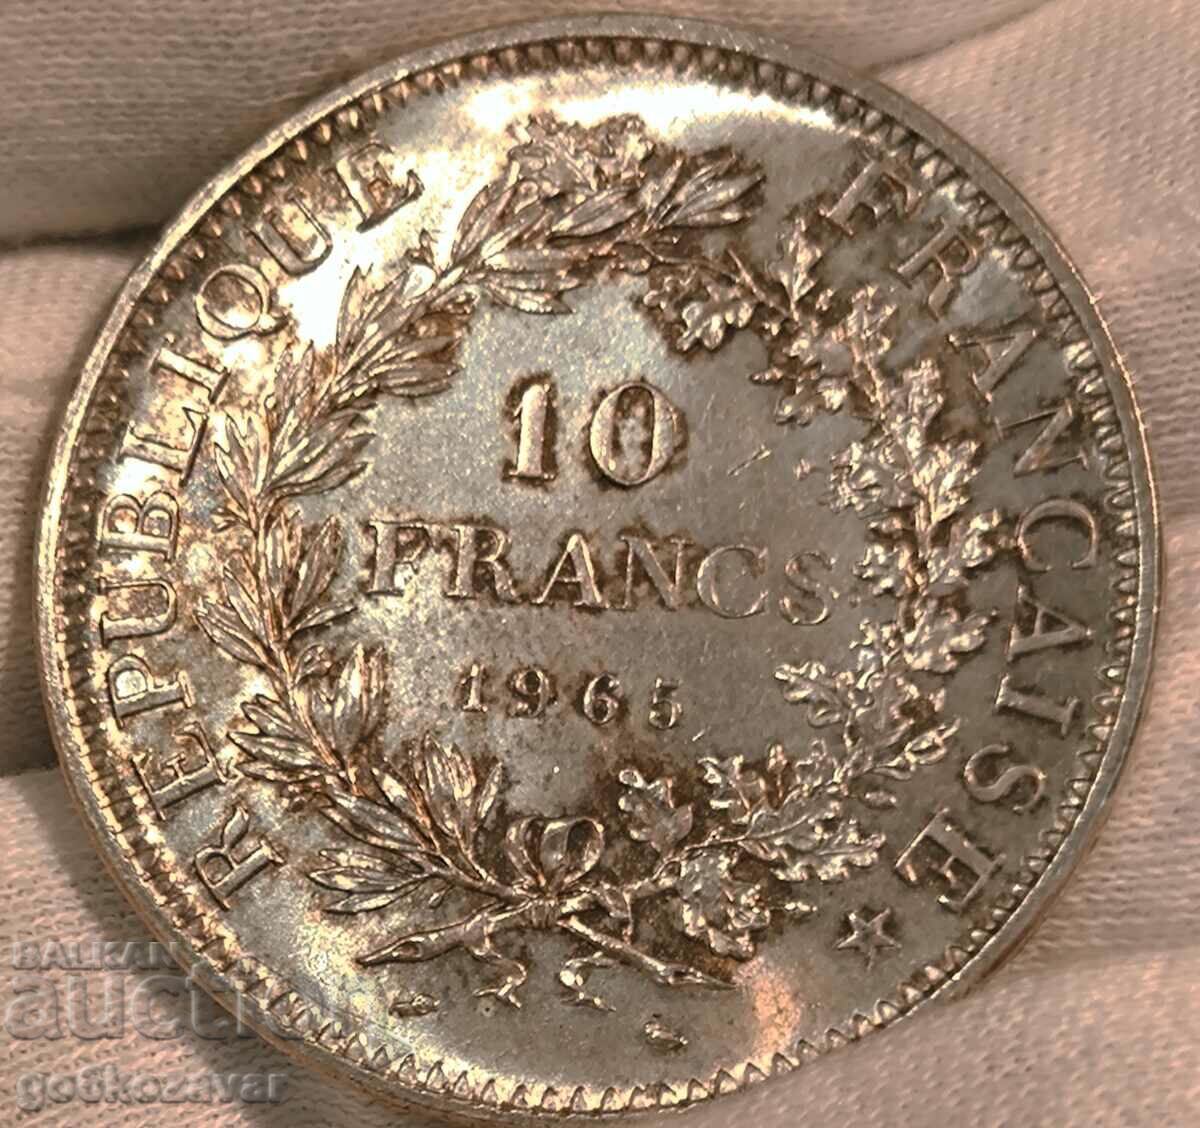 France 10 Francs 1965 Silver UNC Patina !